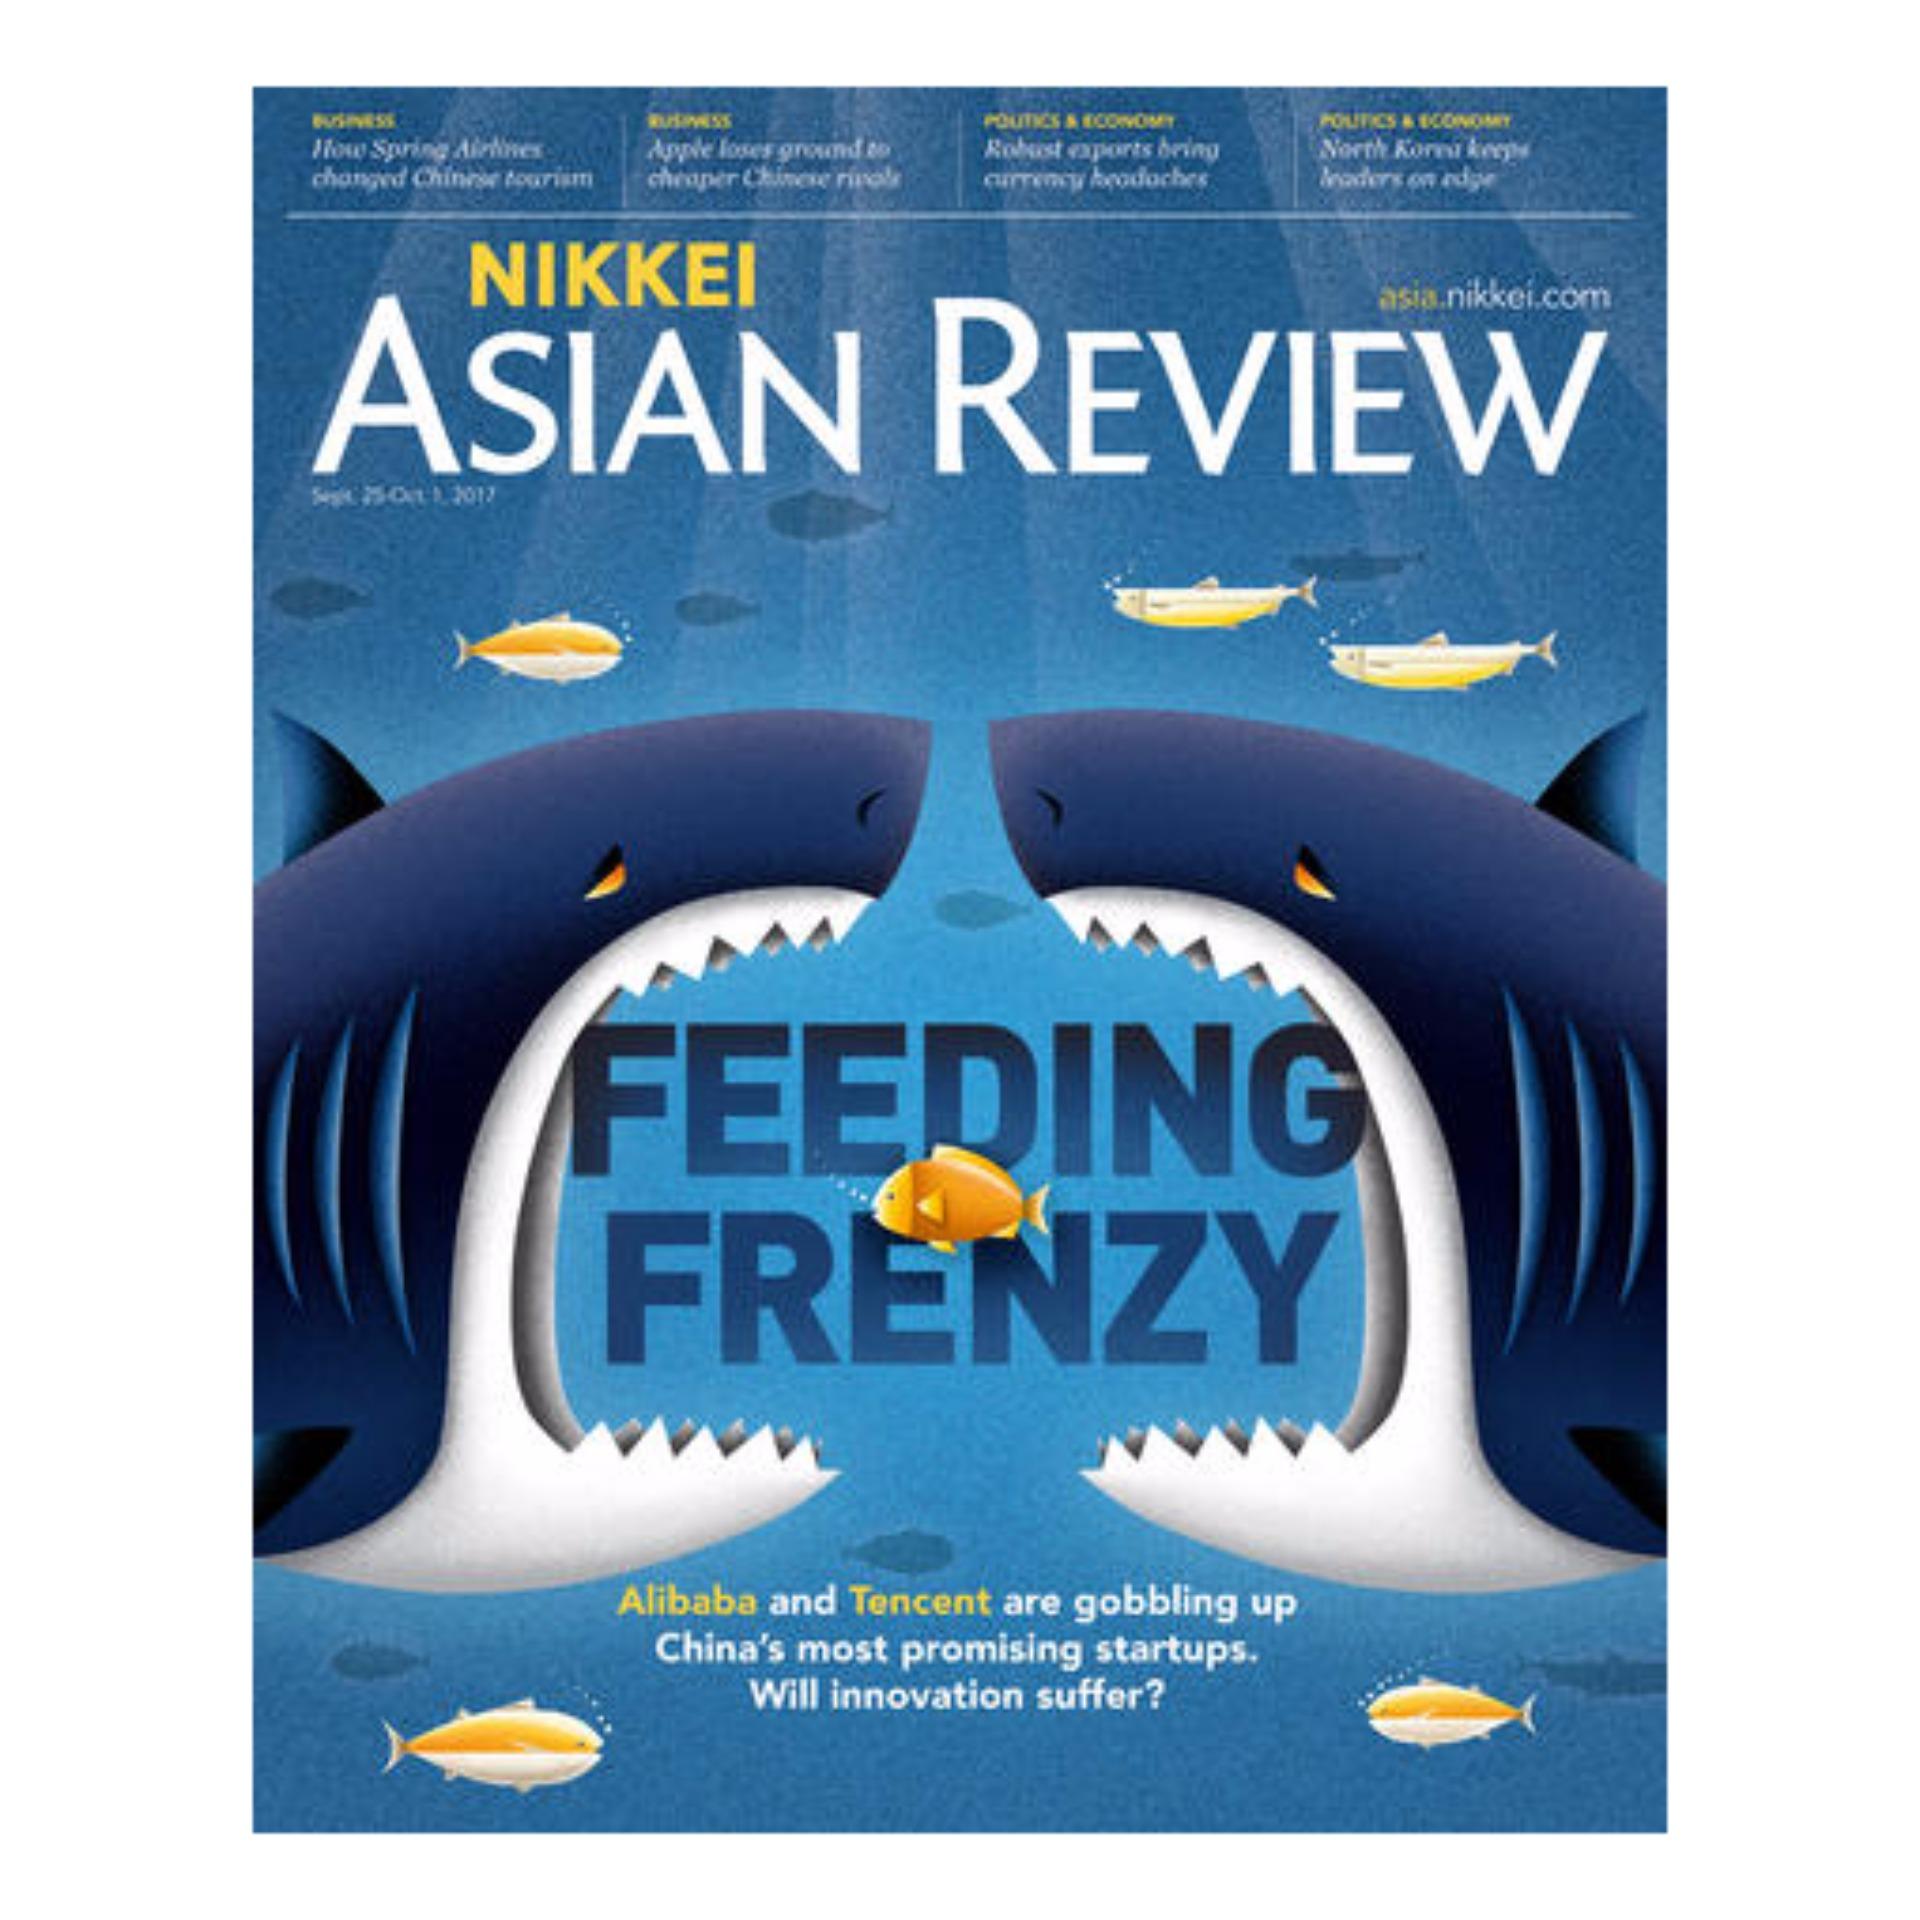 Nikkei Asian Review: Feeding frenzy